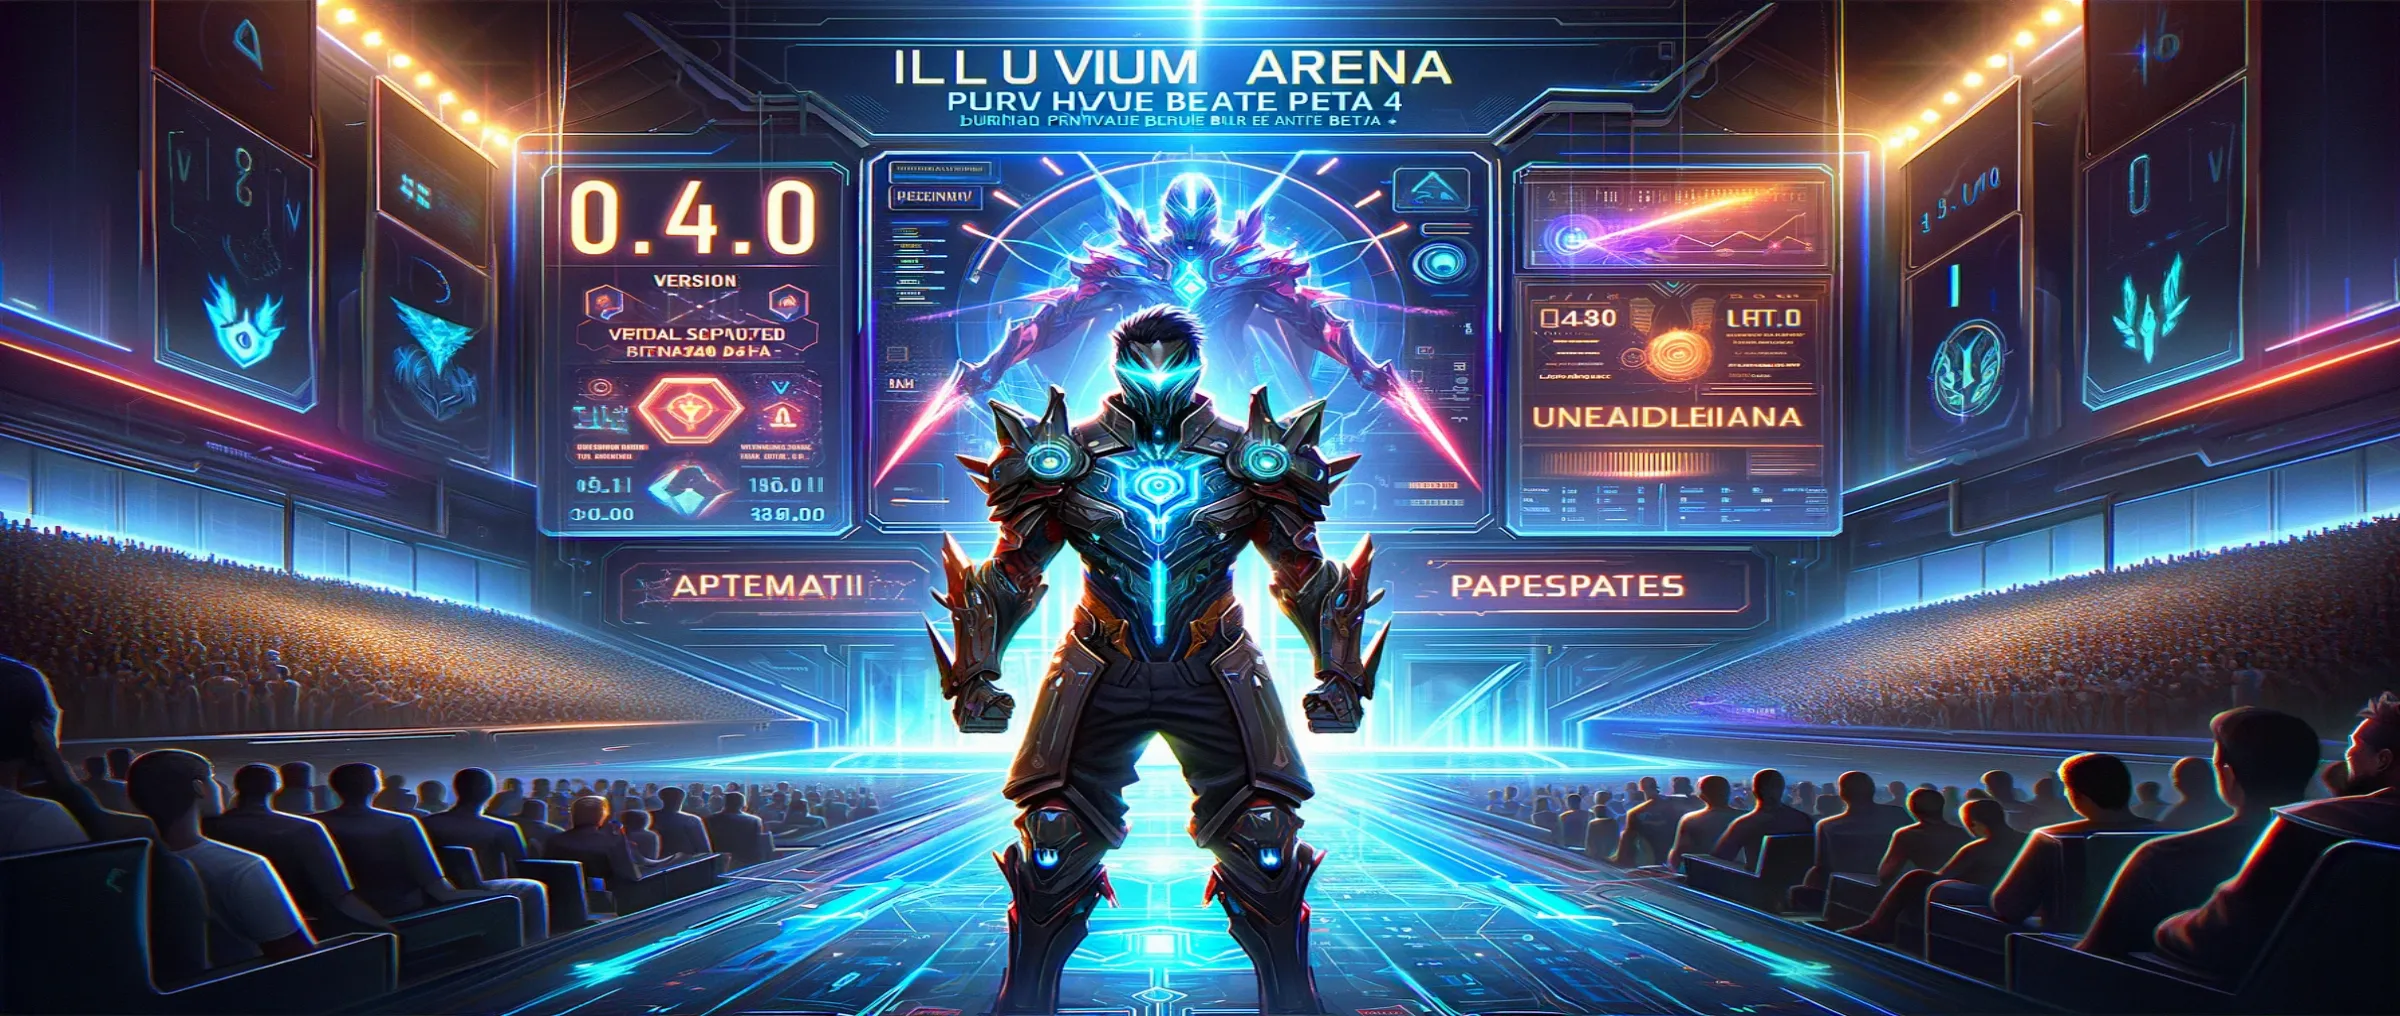 Illuvium Arena 0.4.0 Patch Introduces Significant Updates During Private Beta 4